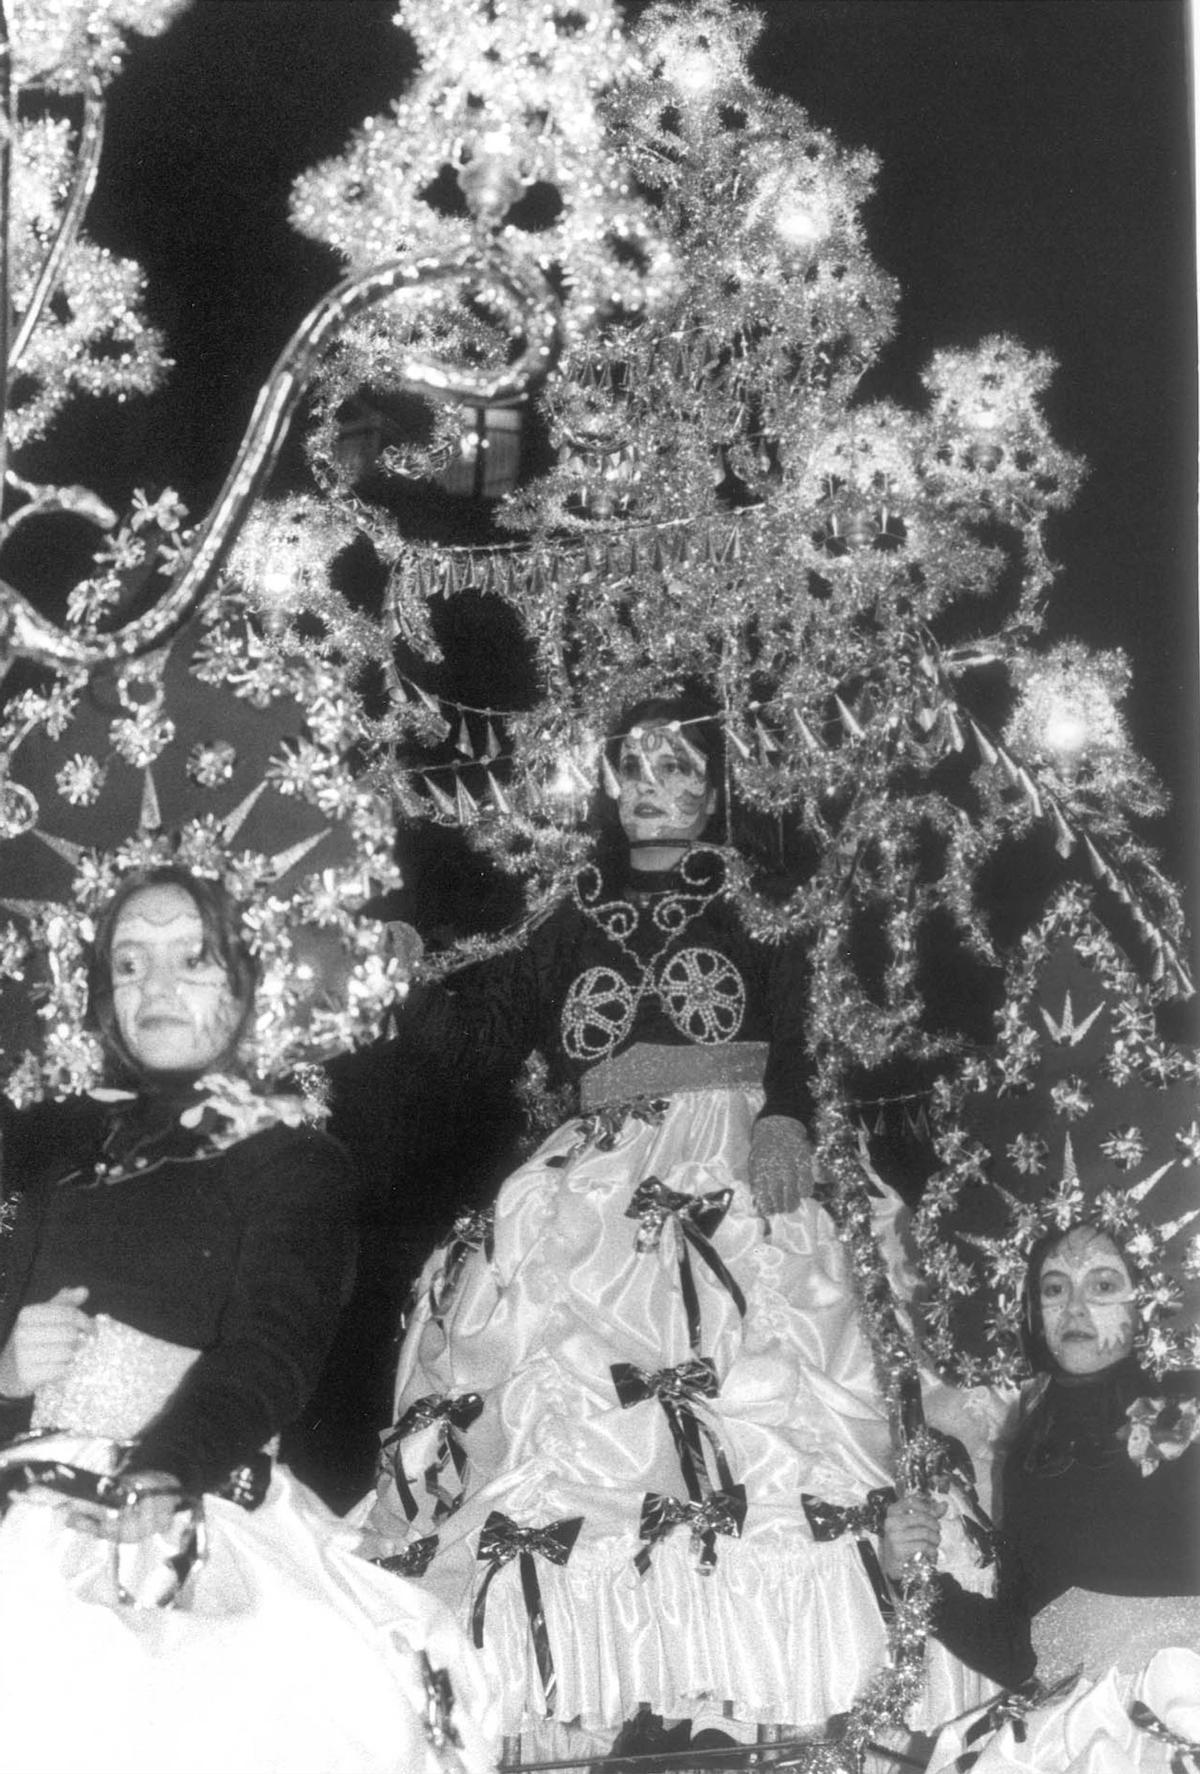 La comparsa de Travesía de Vigo con los trajes de lámparas, encendidos a pilas, con los que ganaron el primer premio en 1996.